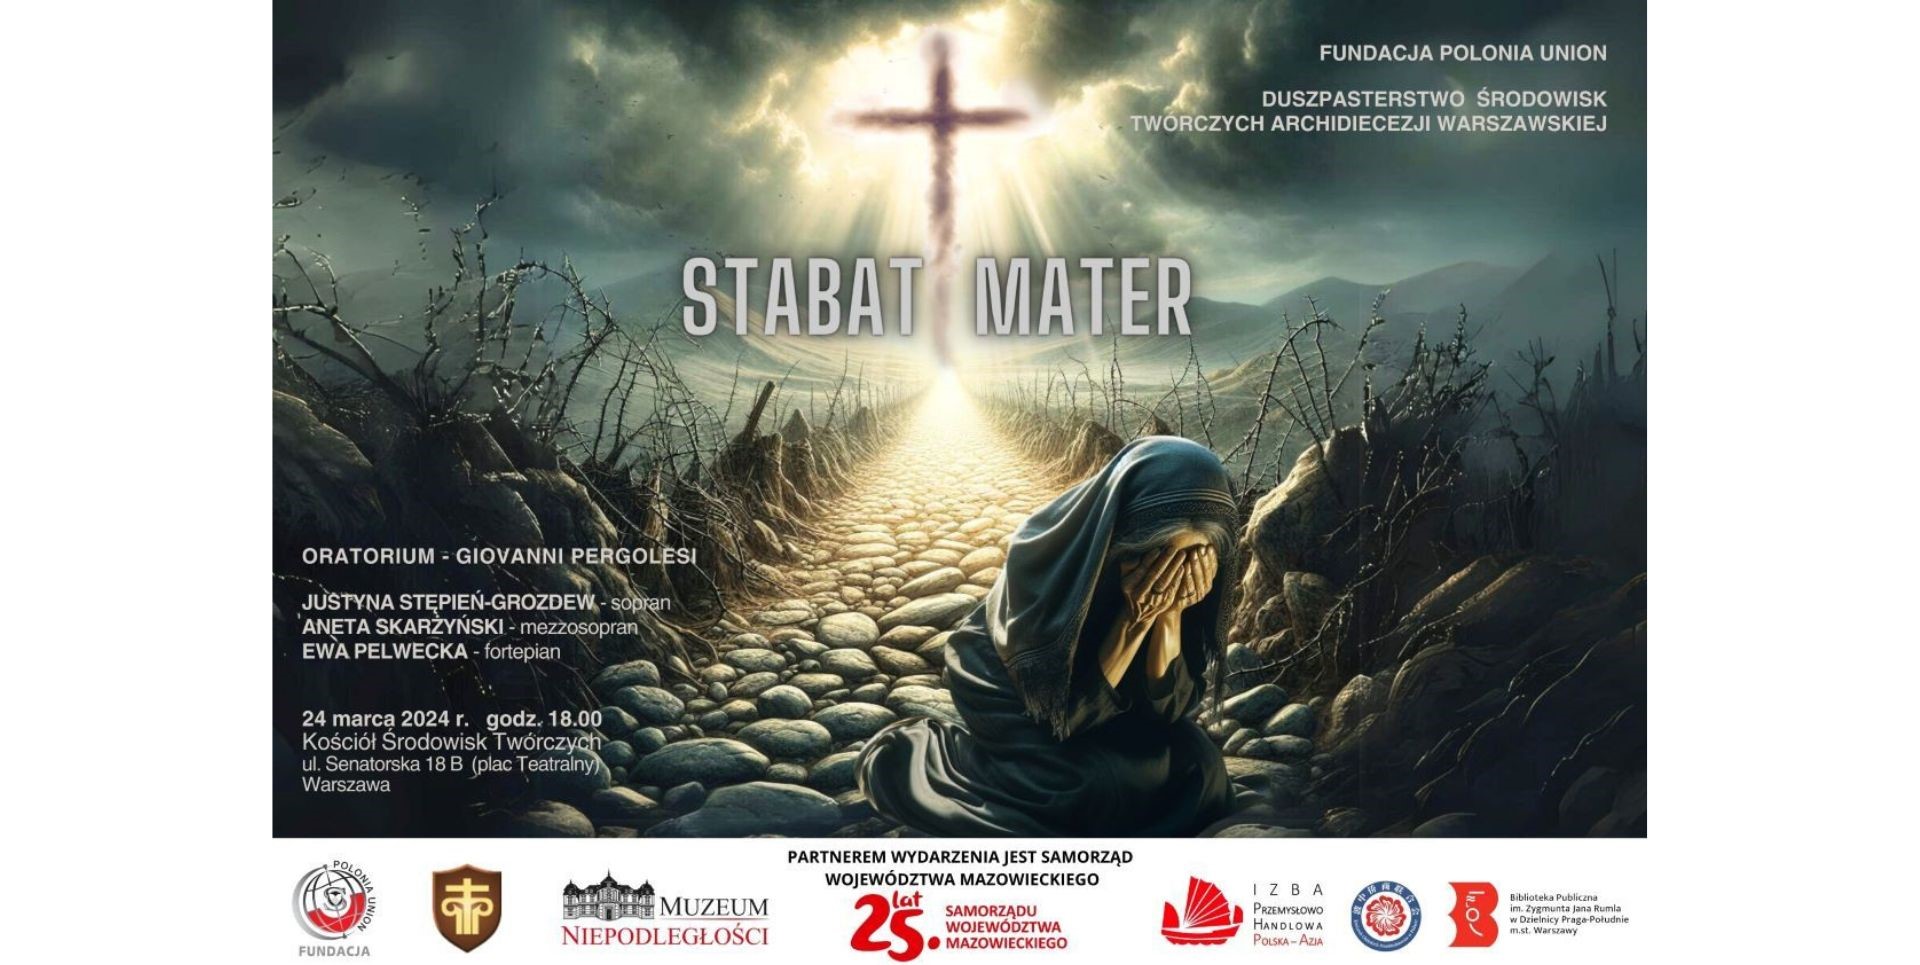 Oratorium STABAT MATER - wyjątkowy koncert w Warszawie